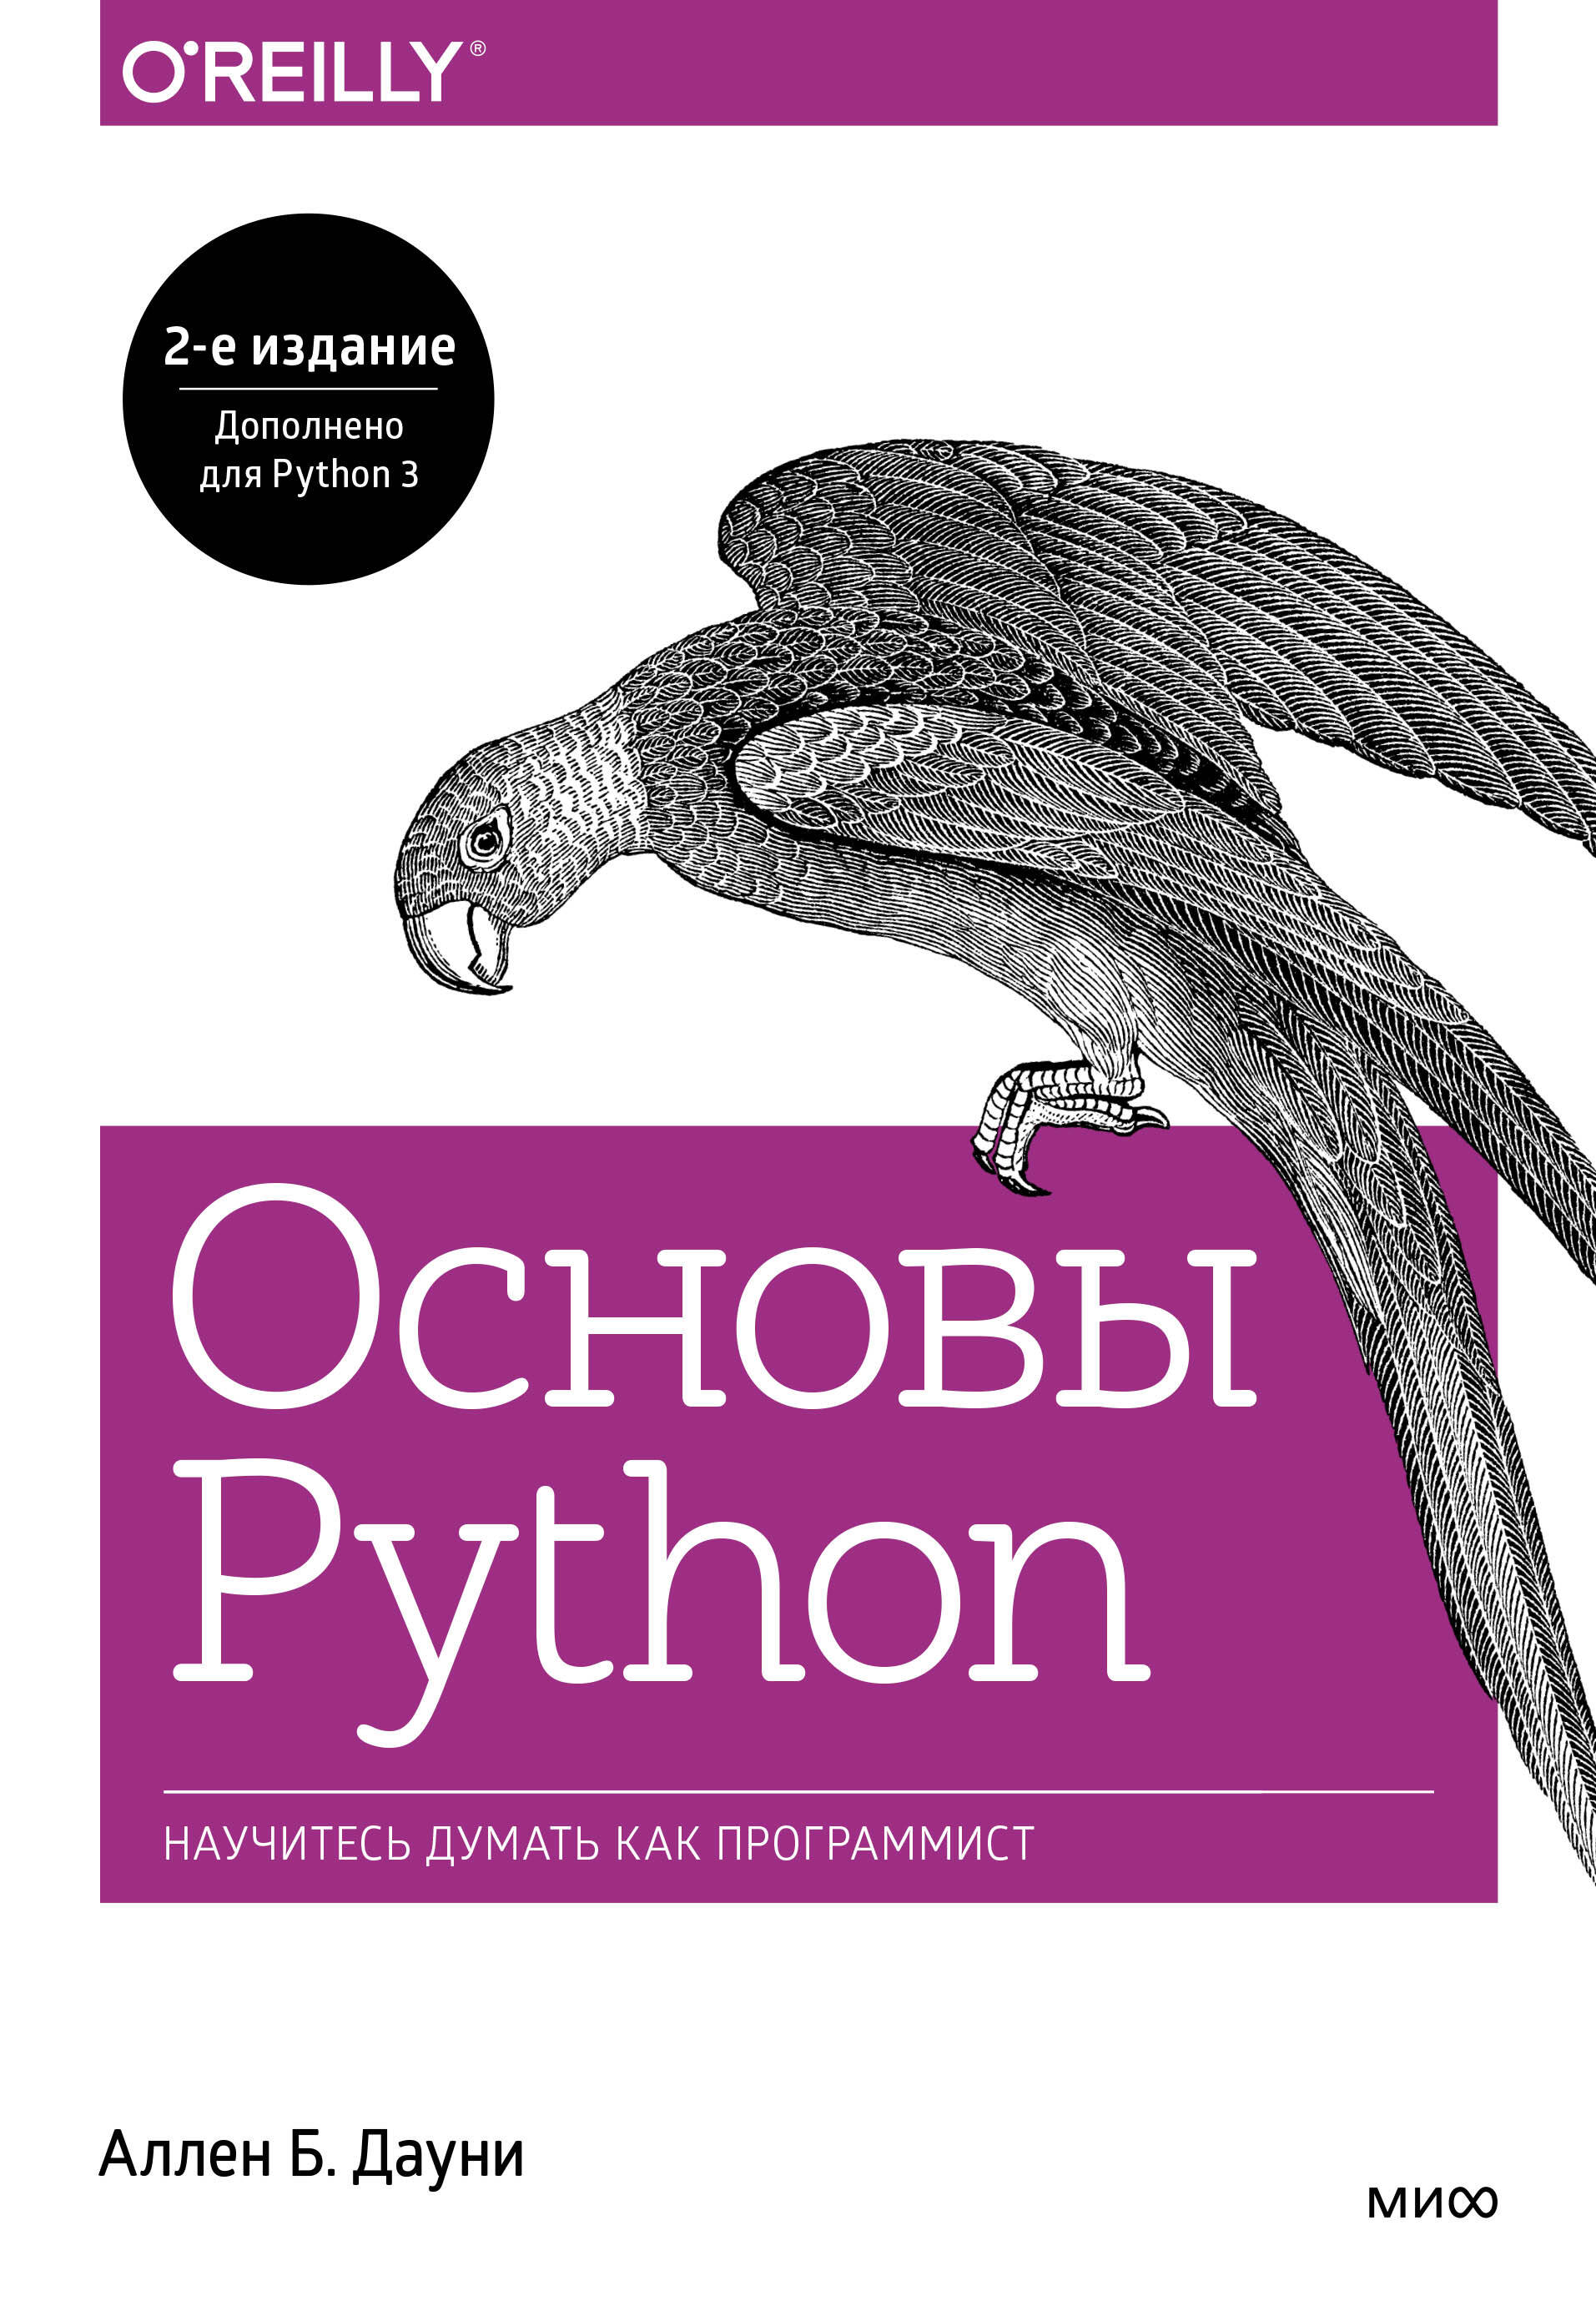 Дауни Аллен Б. Основы Python. Научитесь думать как программист